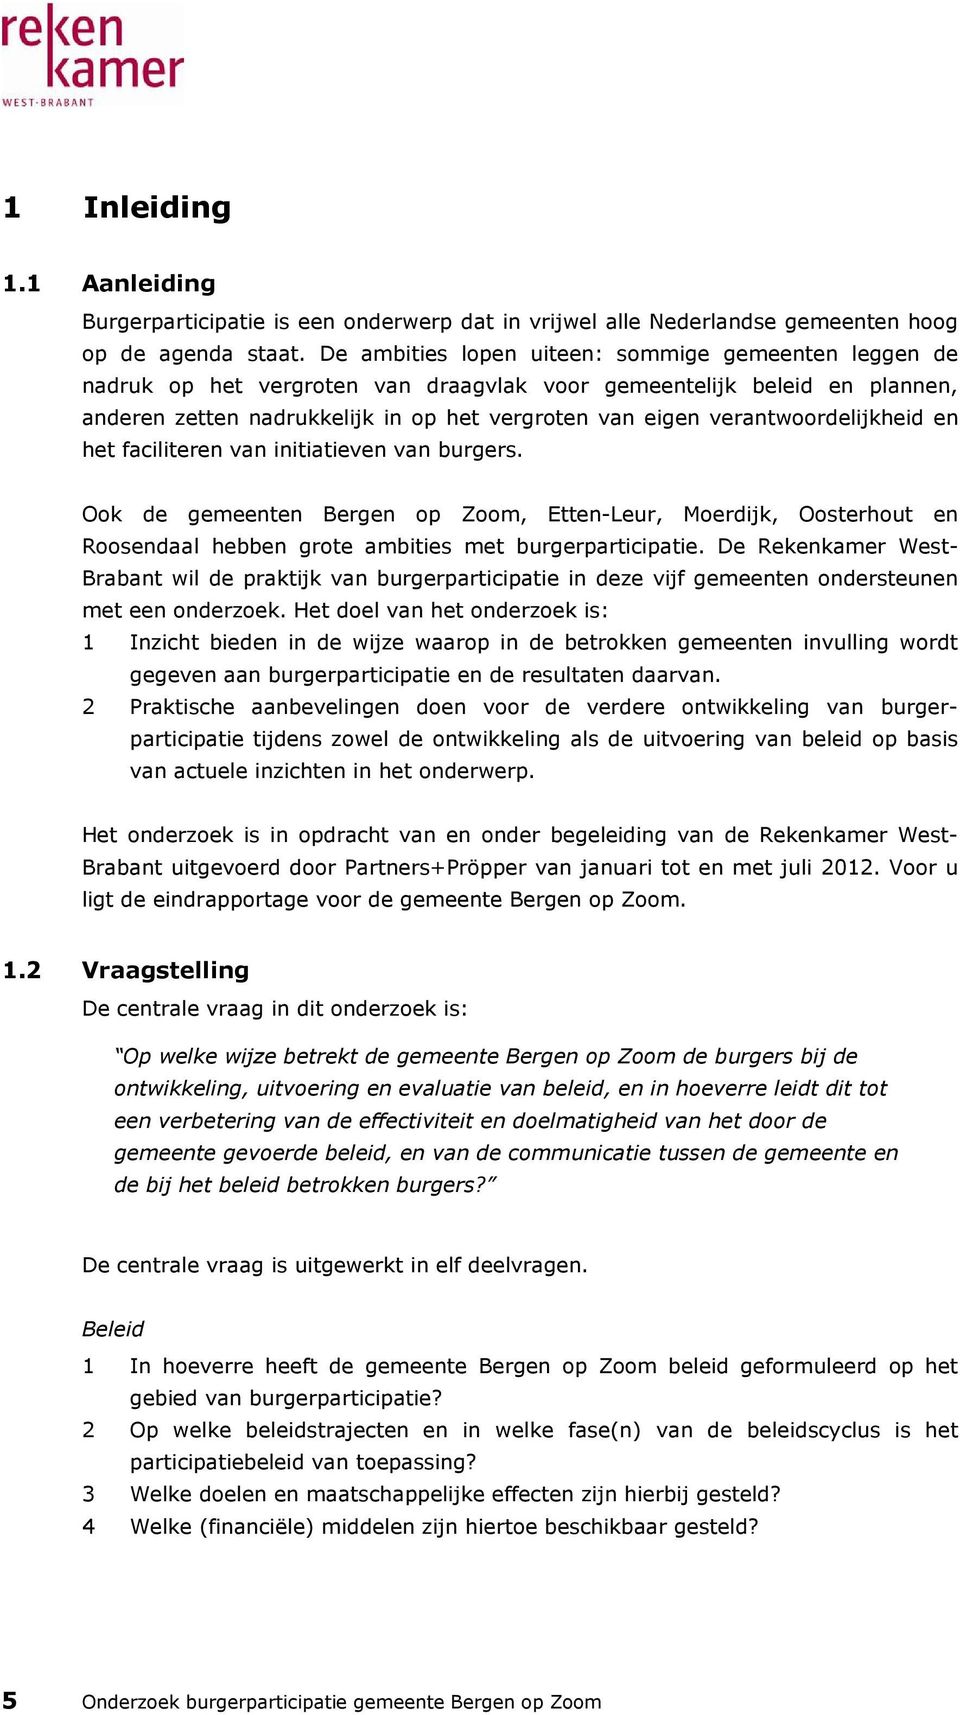 verantwoordelijkheid en het faciliteren van initiatieven van burgers. Ook de gemeenten Bergen op Zoom, Etten-Leur, Moerdijk, Oosterhout en Roosendaal hebben grote ambities met burgerparticipatie.